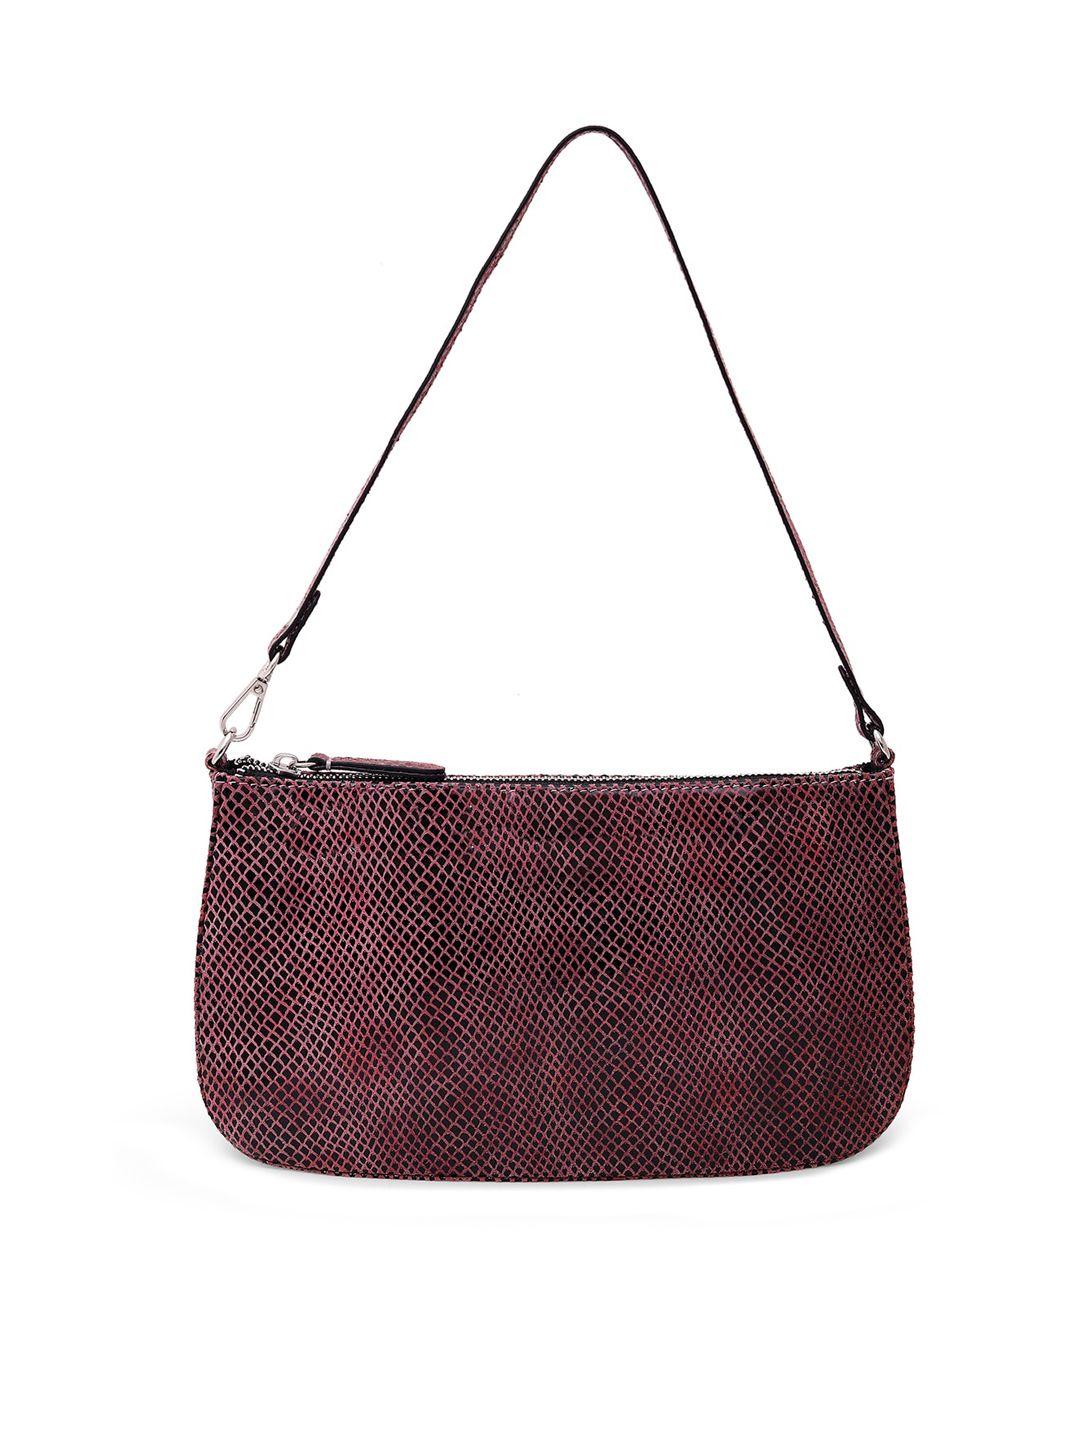 belwaba burgundy & black snakeskin textured handheld bag